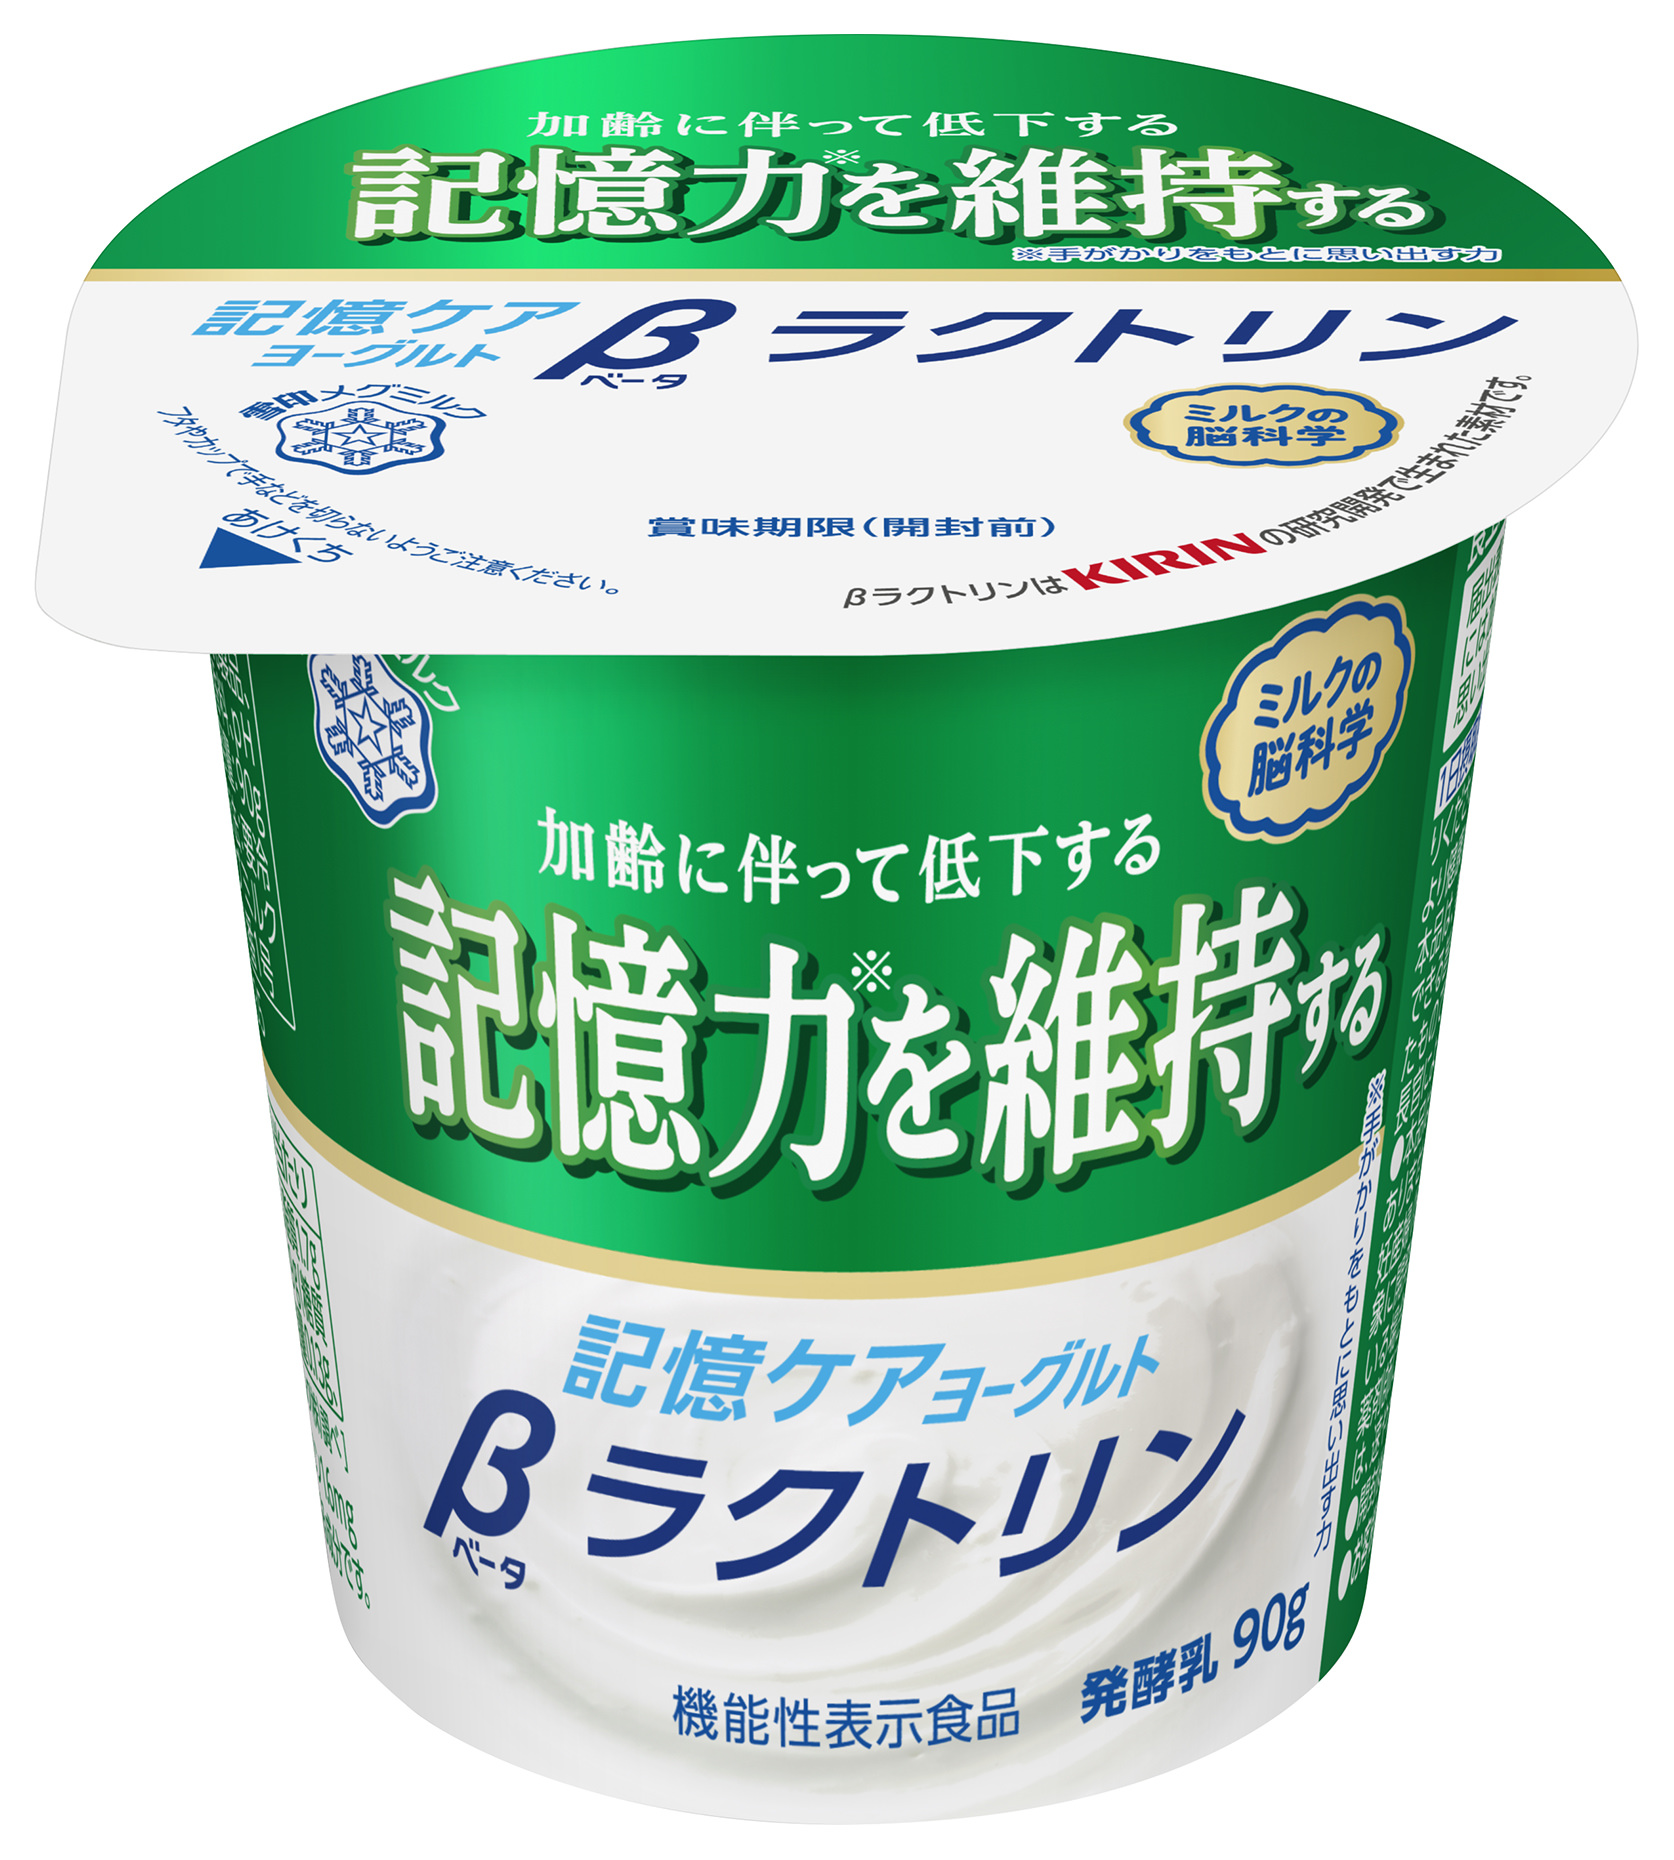 大阪塩系ラーメンの味分けフランチャイズが
6/3～6/13の間に島根、京都、恵比寿に3店舗オープン